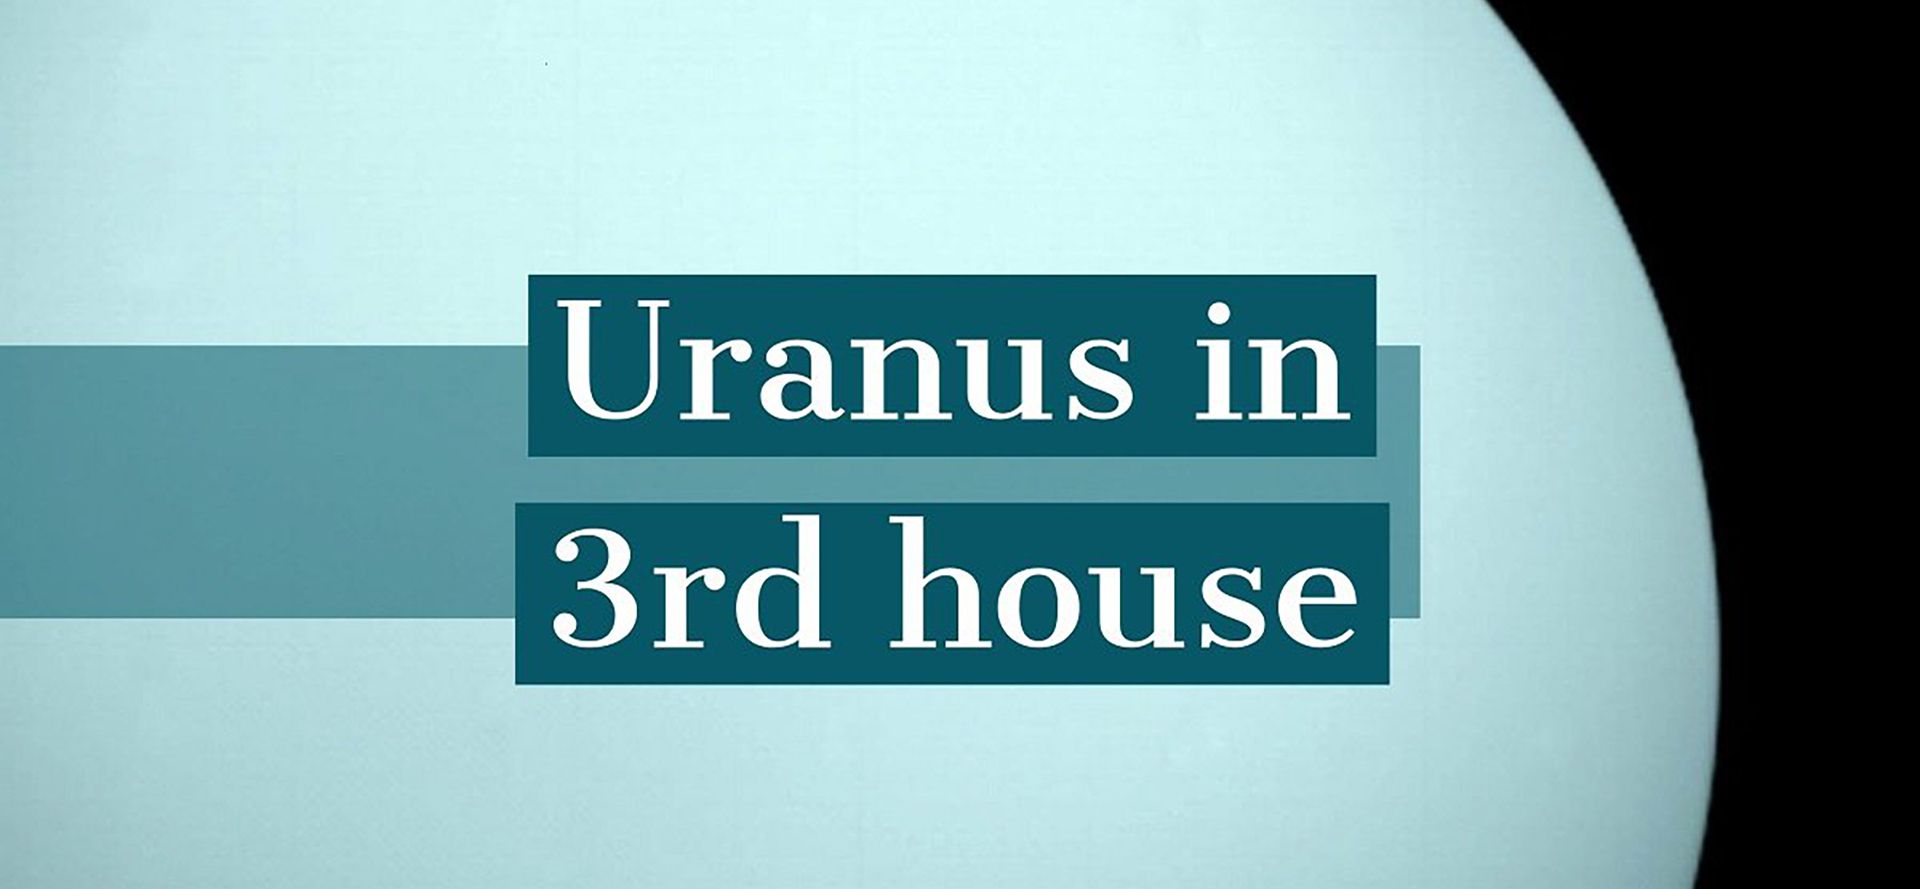 Uranus in 3rd house.